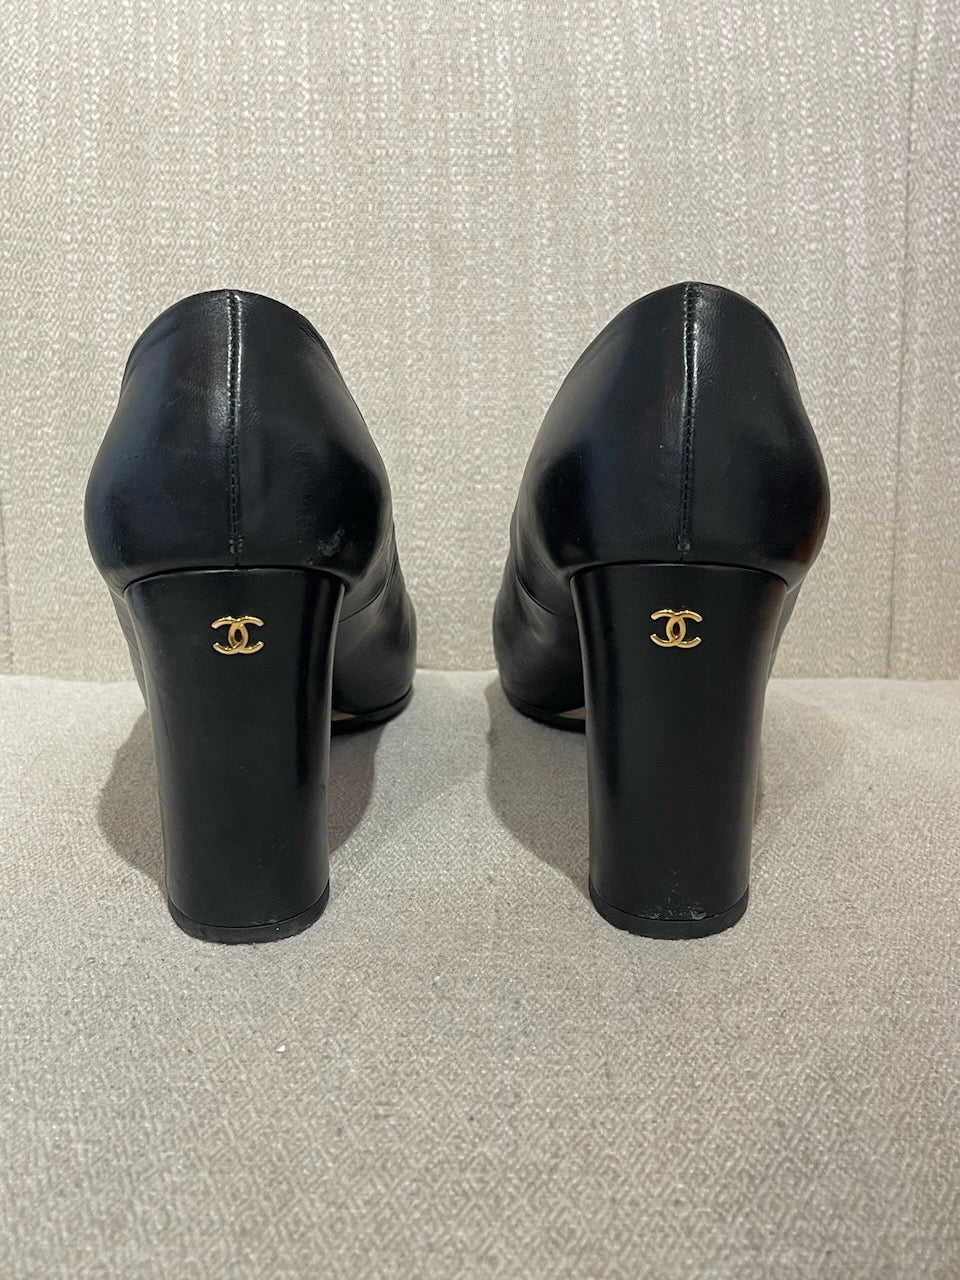 Escarpins Chanel noirs T.39,5